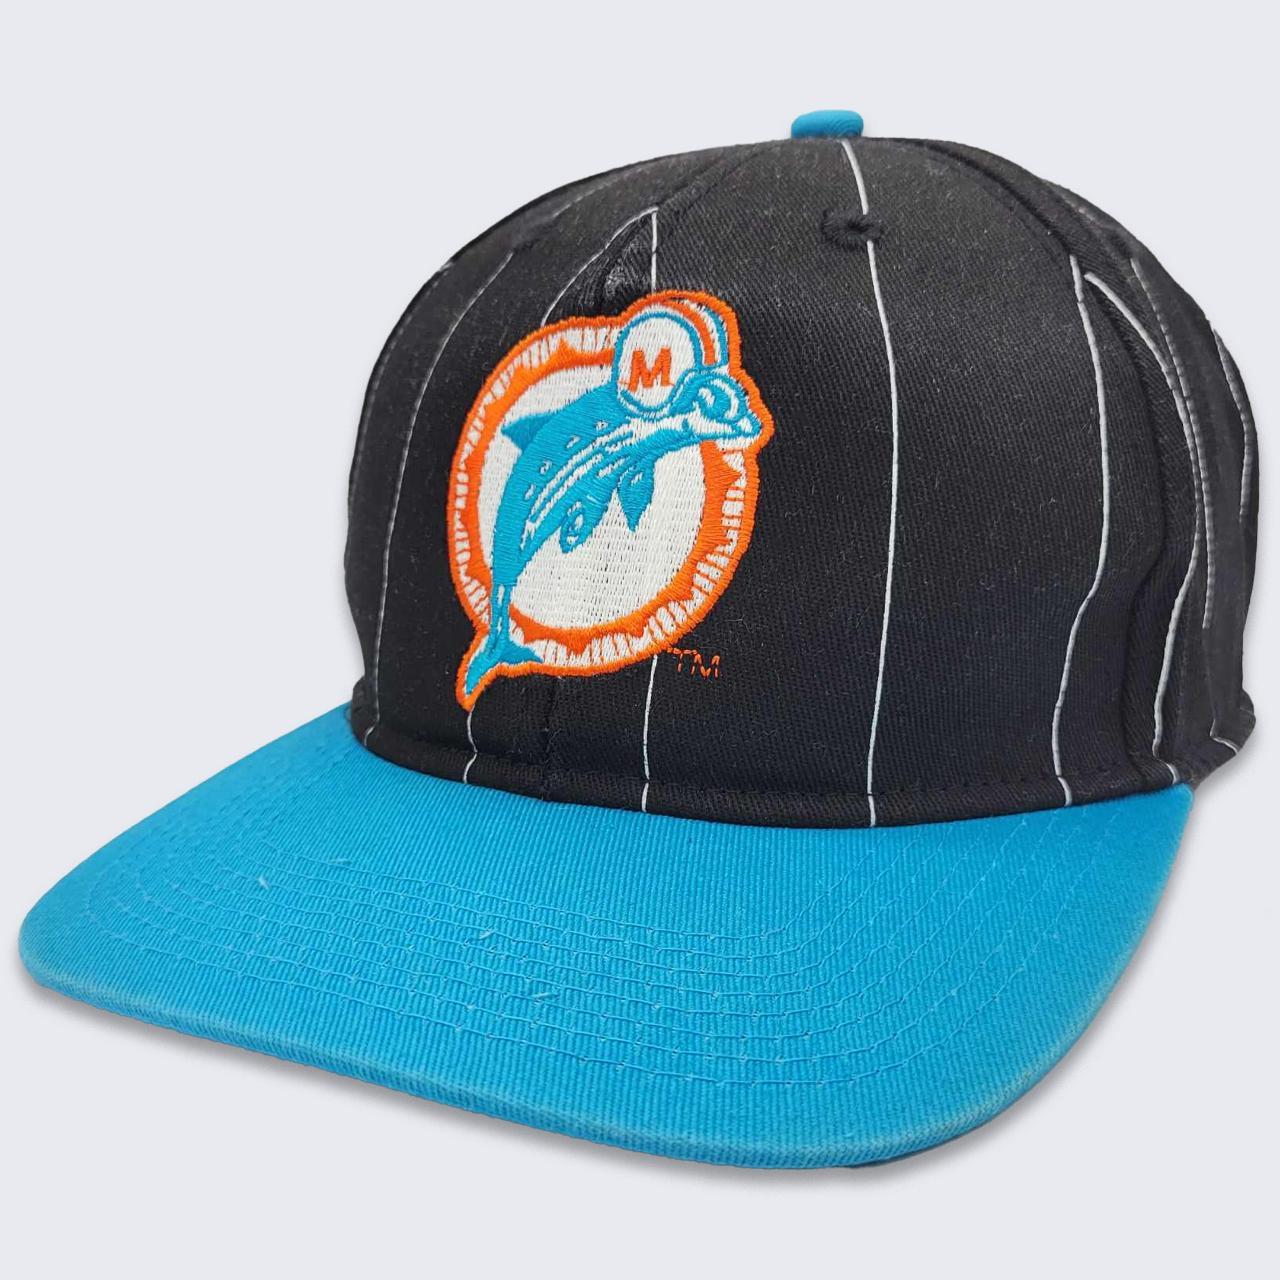 Vintage 90s Starter Florida Panthers Snapback Hat Cap